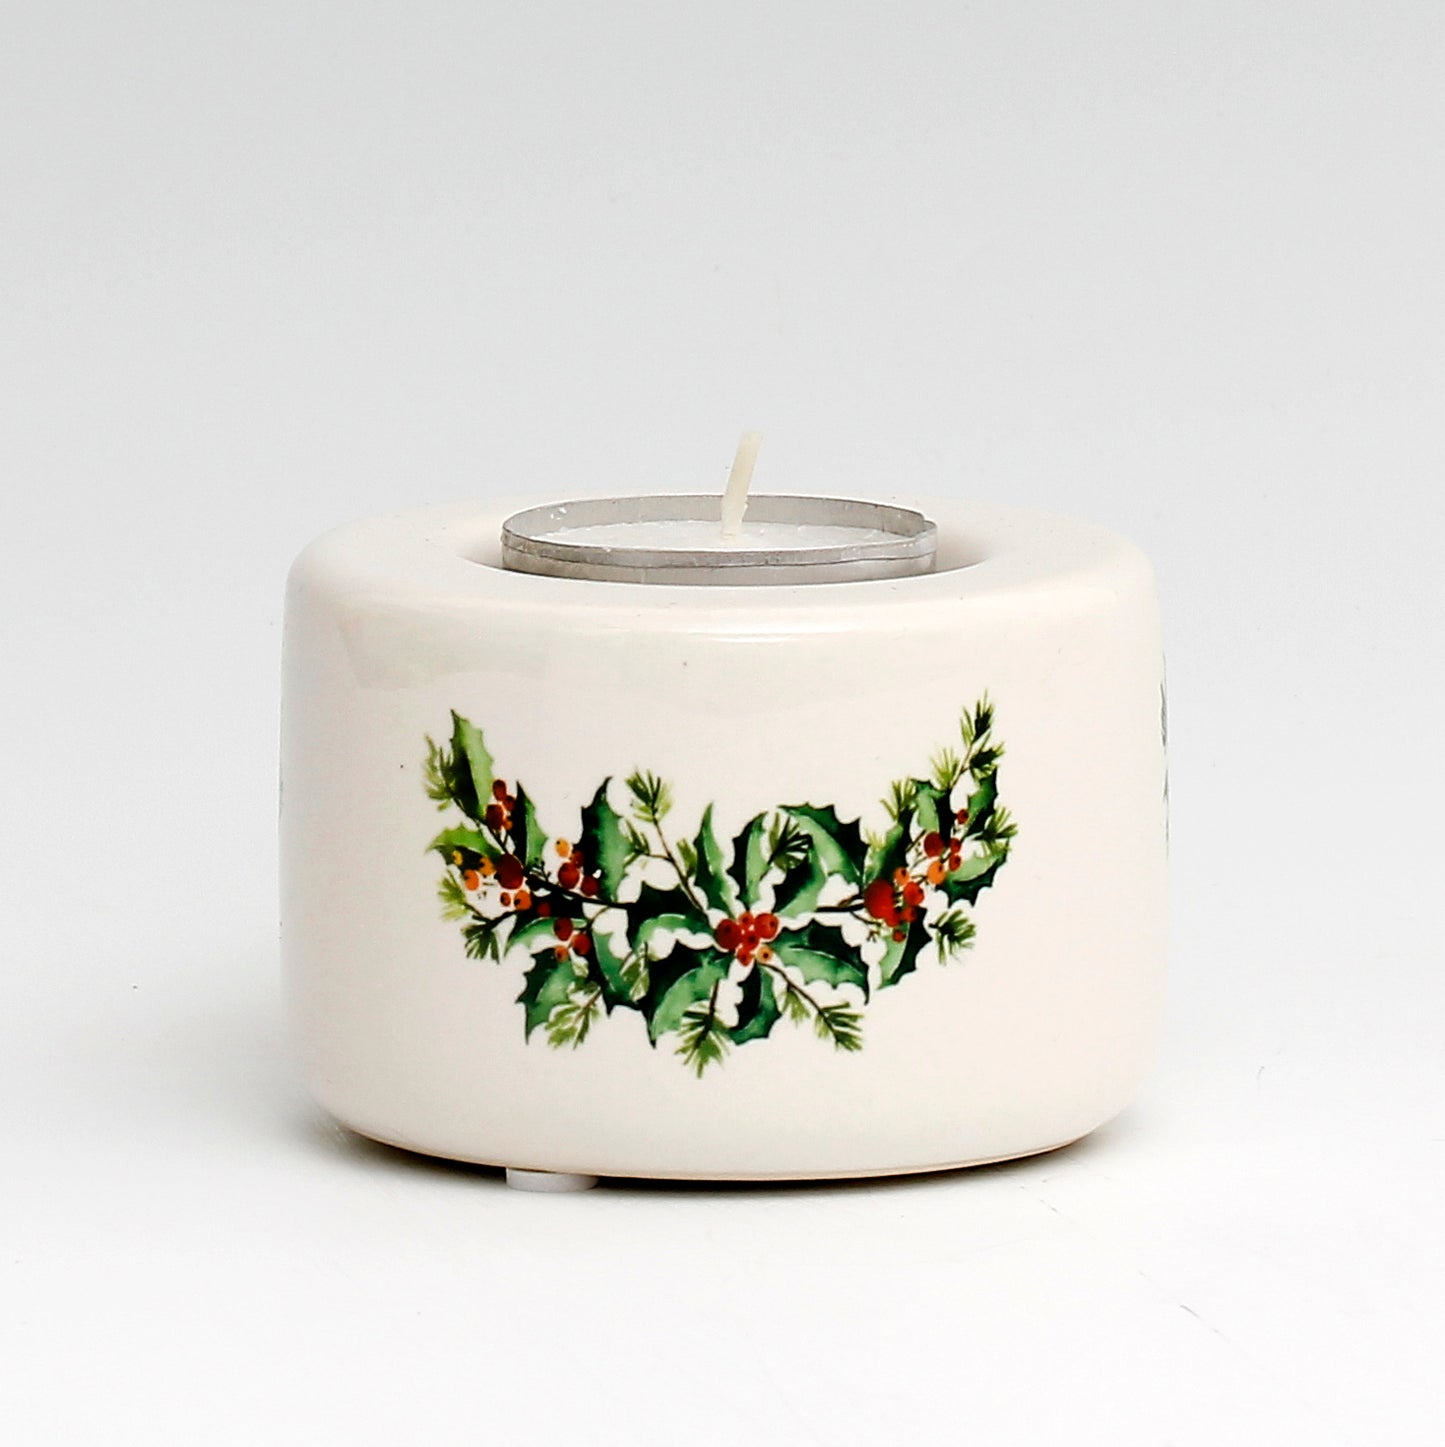 SUBLIMART: Ceramic Tealight in Christmas Design #1